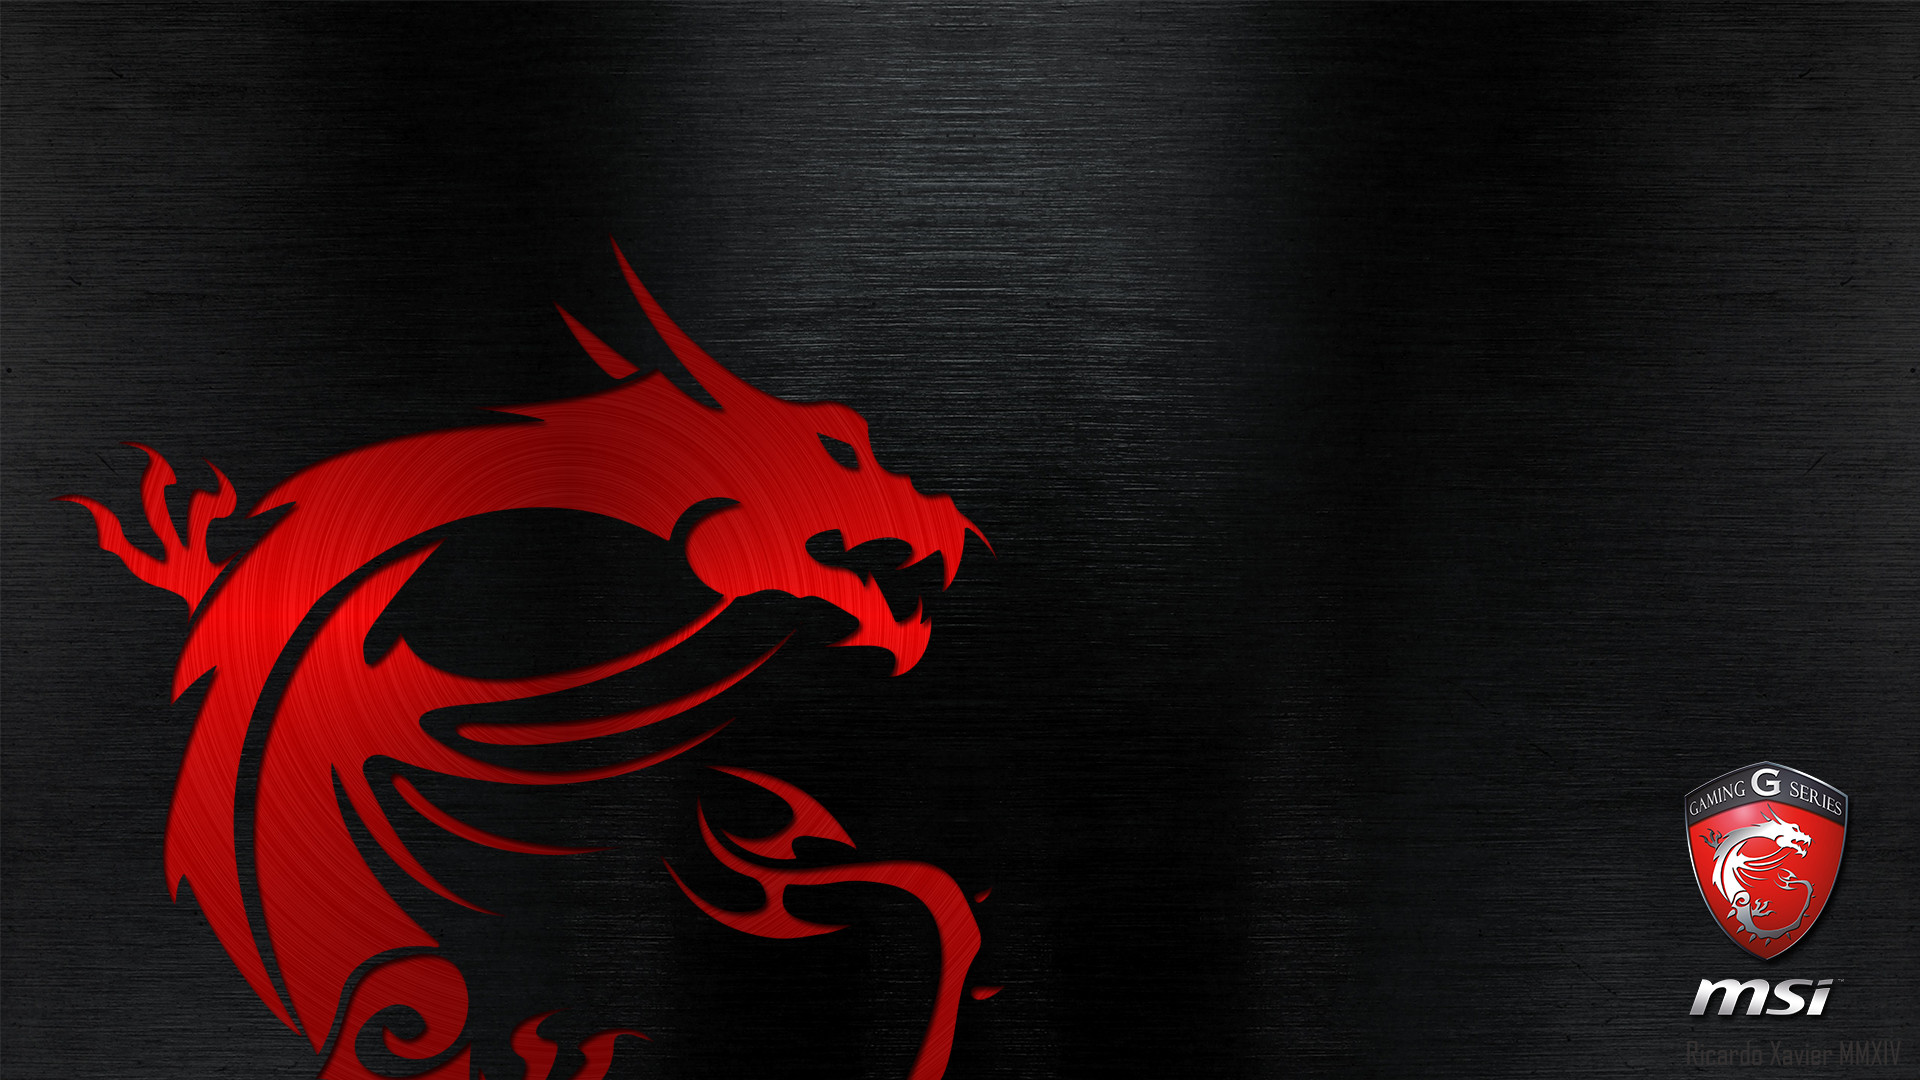 MSI Gaming Wallpaper – red dragon emobossed (1920Ã1080) | def | Pinterest |  Digital marketing